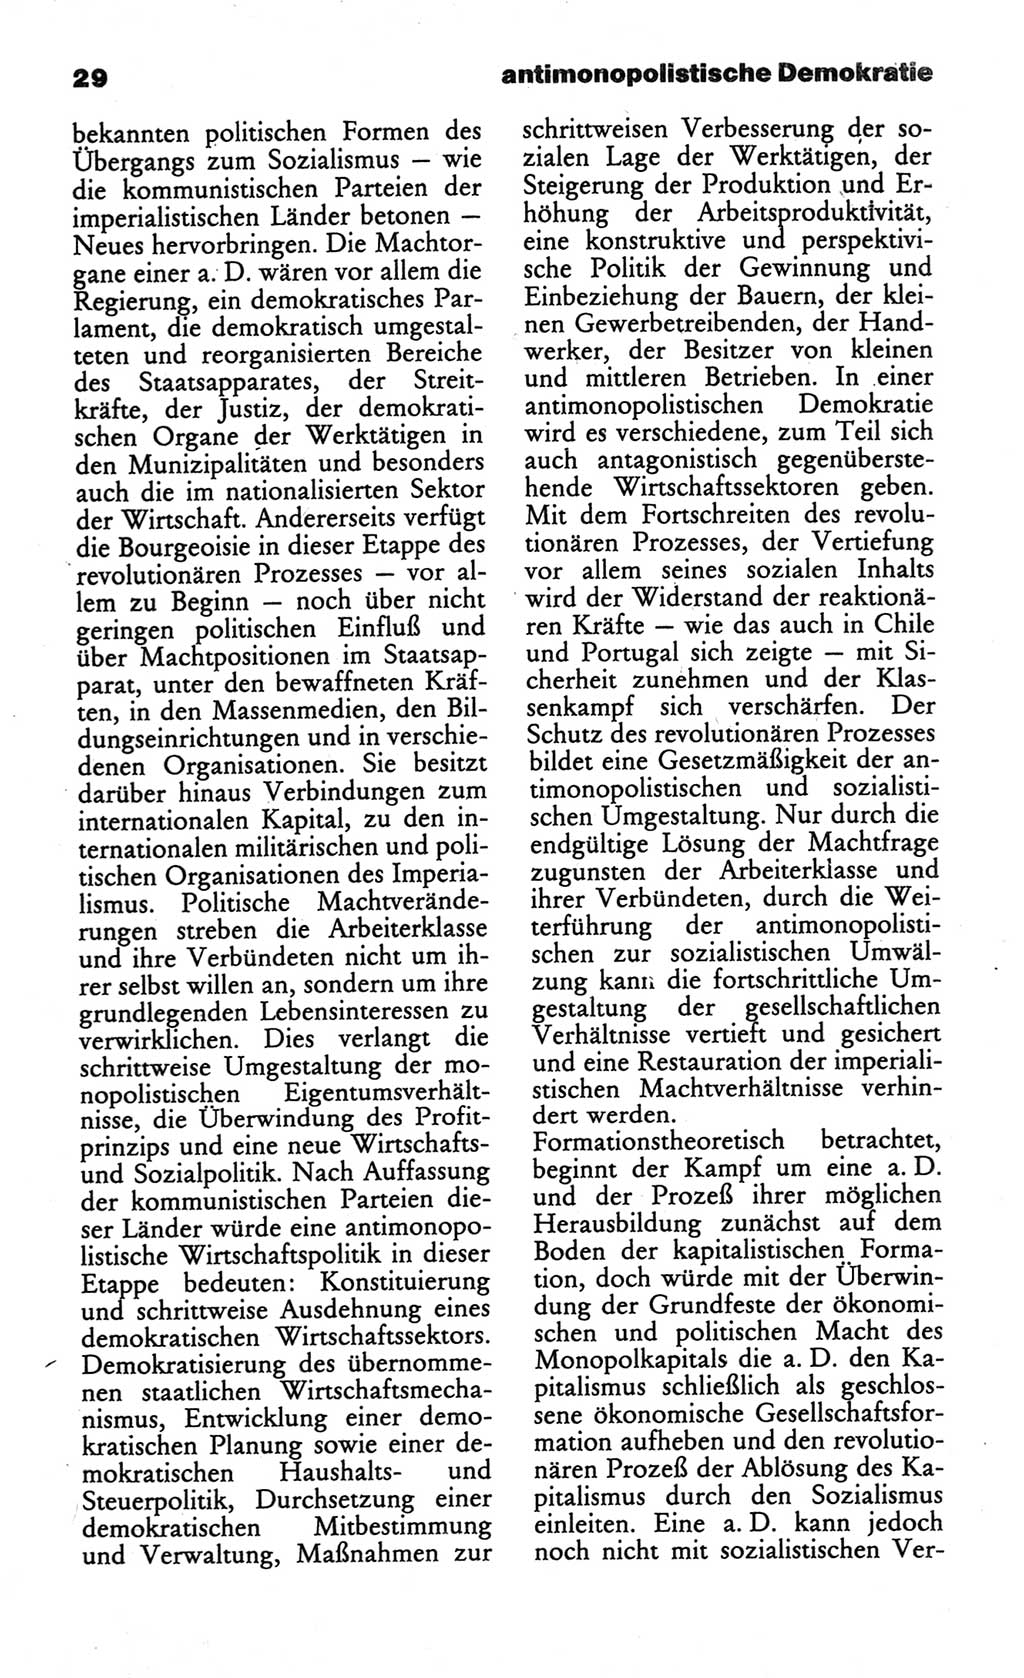 Wörterbuch des wissenschaftlichen Kommunismus [Deutsche Demokratische Republik (DDR)] 1984, Seite 29 (Wb. wiss. Komm. DDR 1984, S. 29)